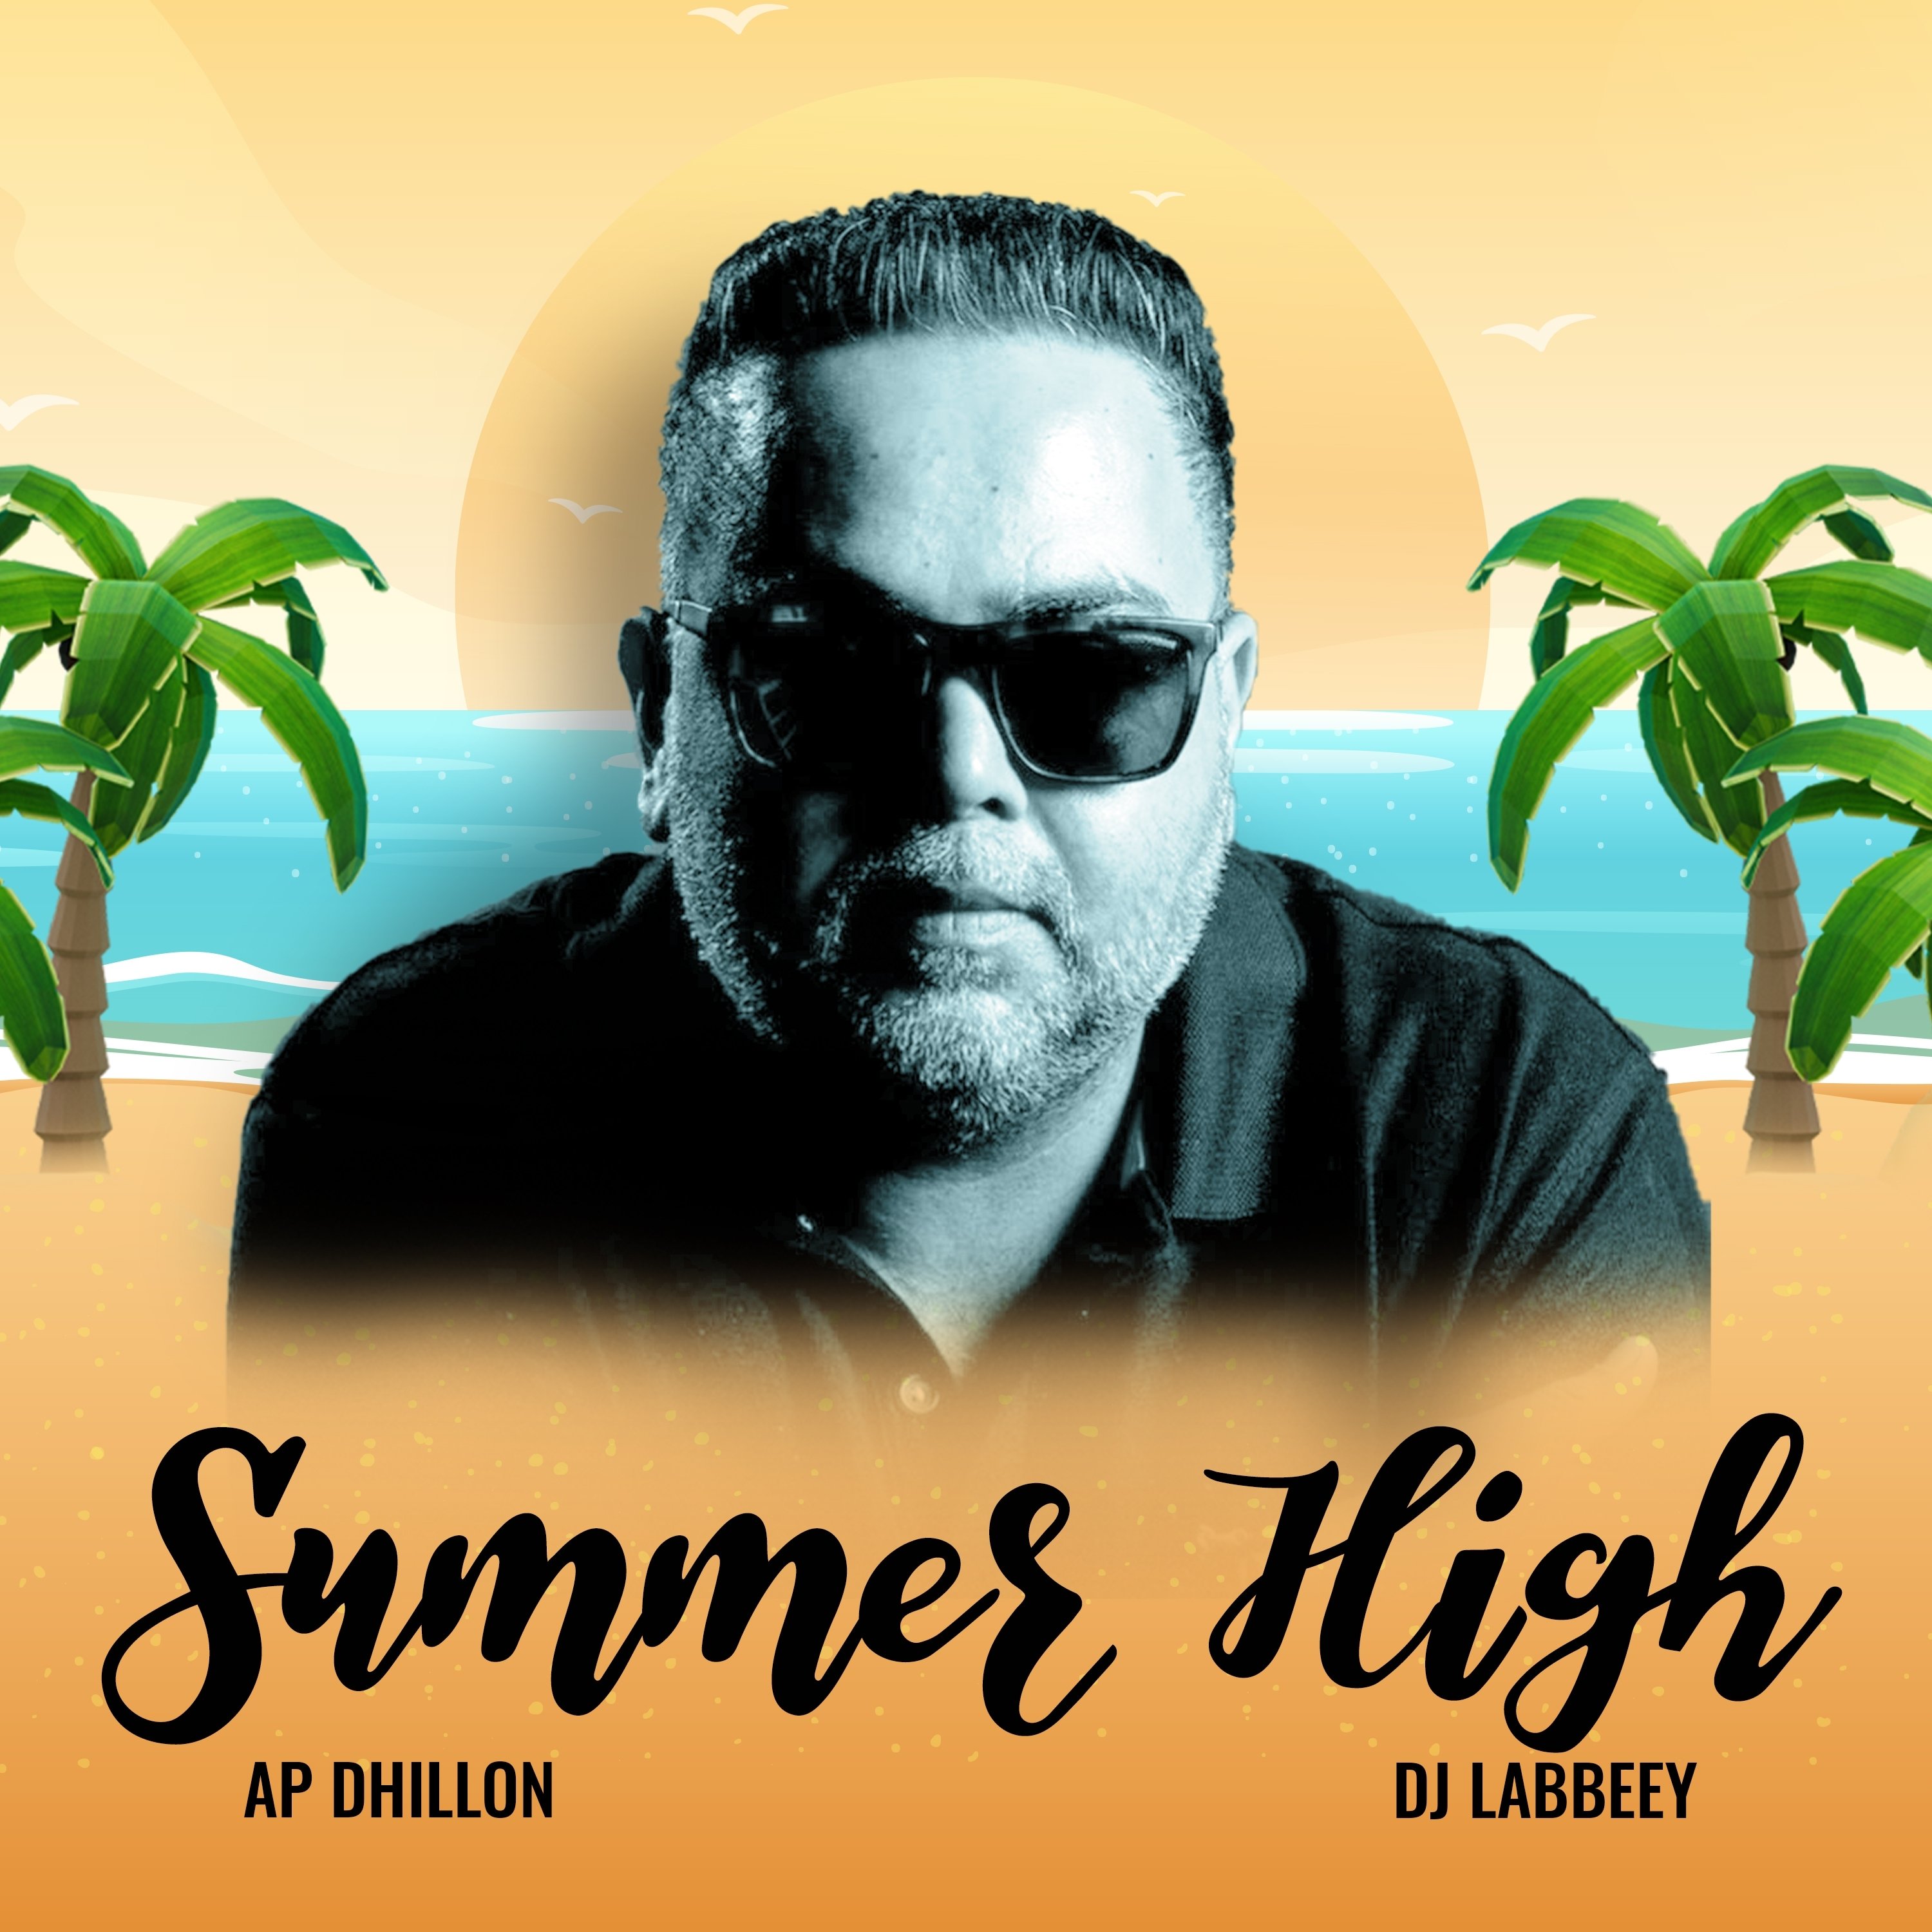 Summer high lyrics ap dhillon